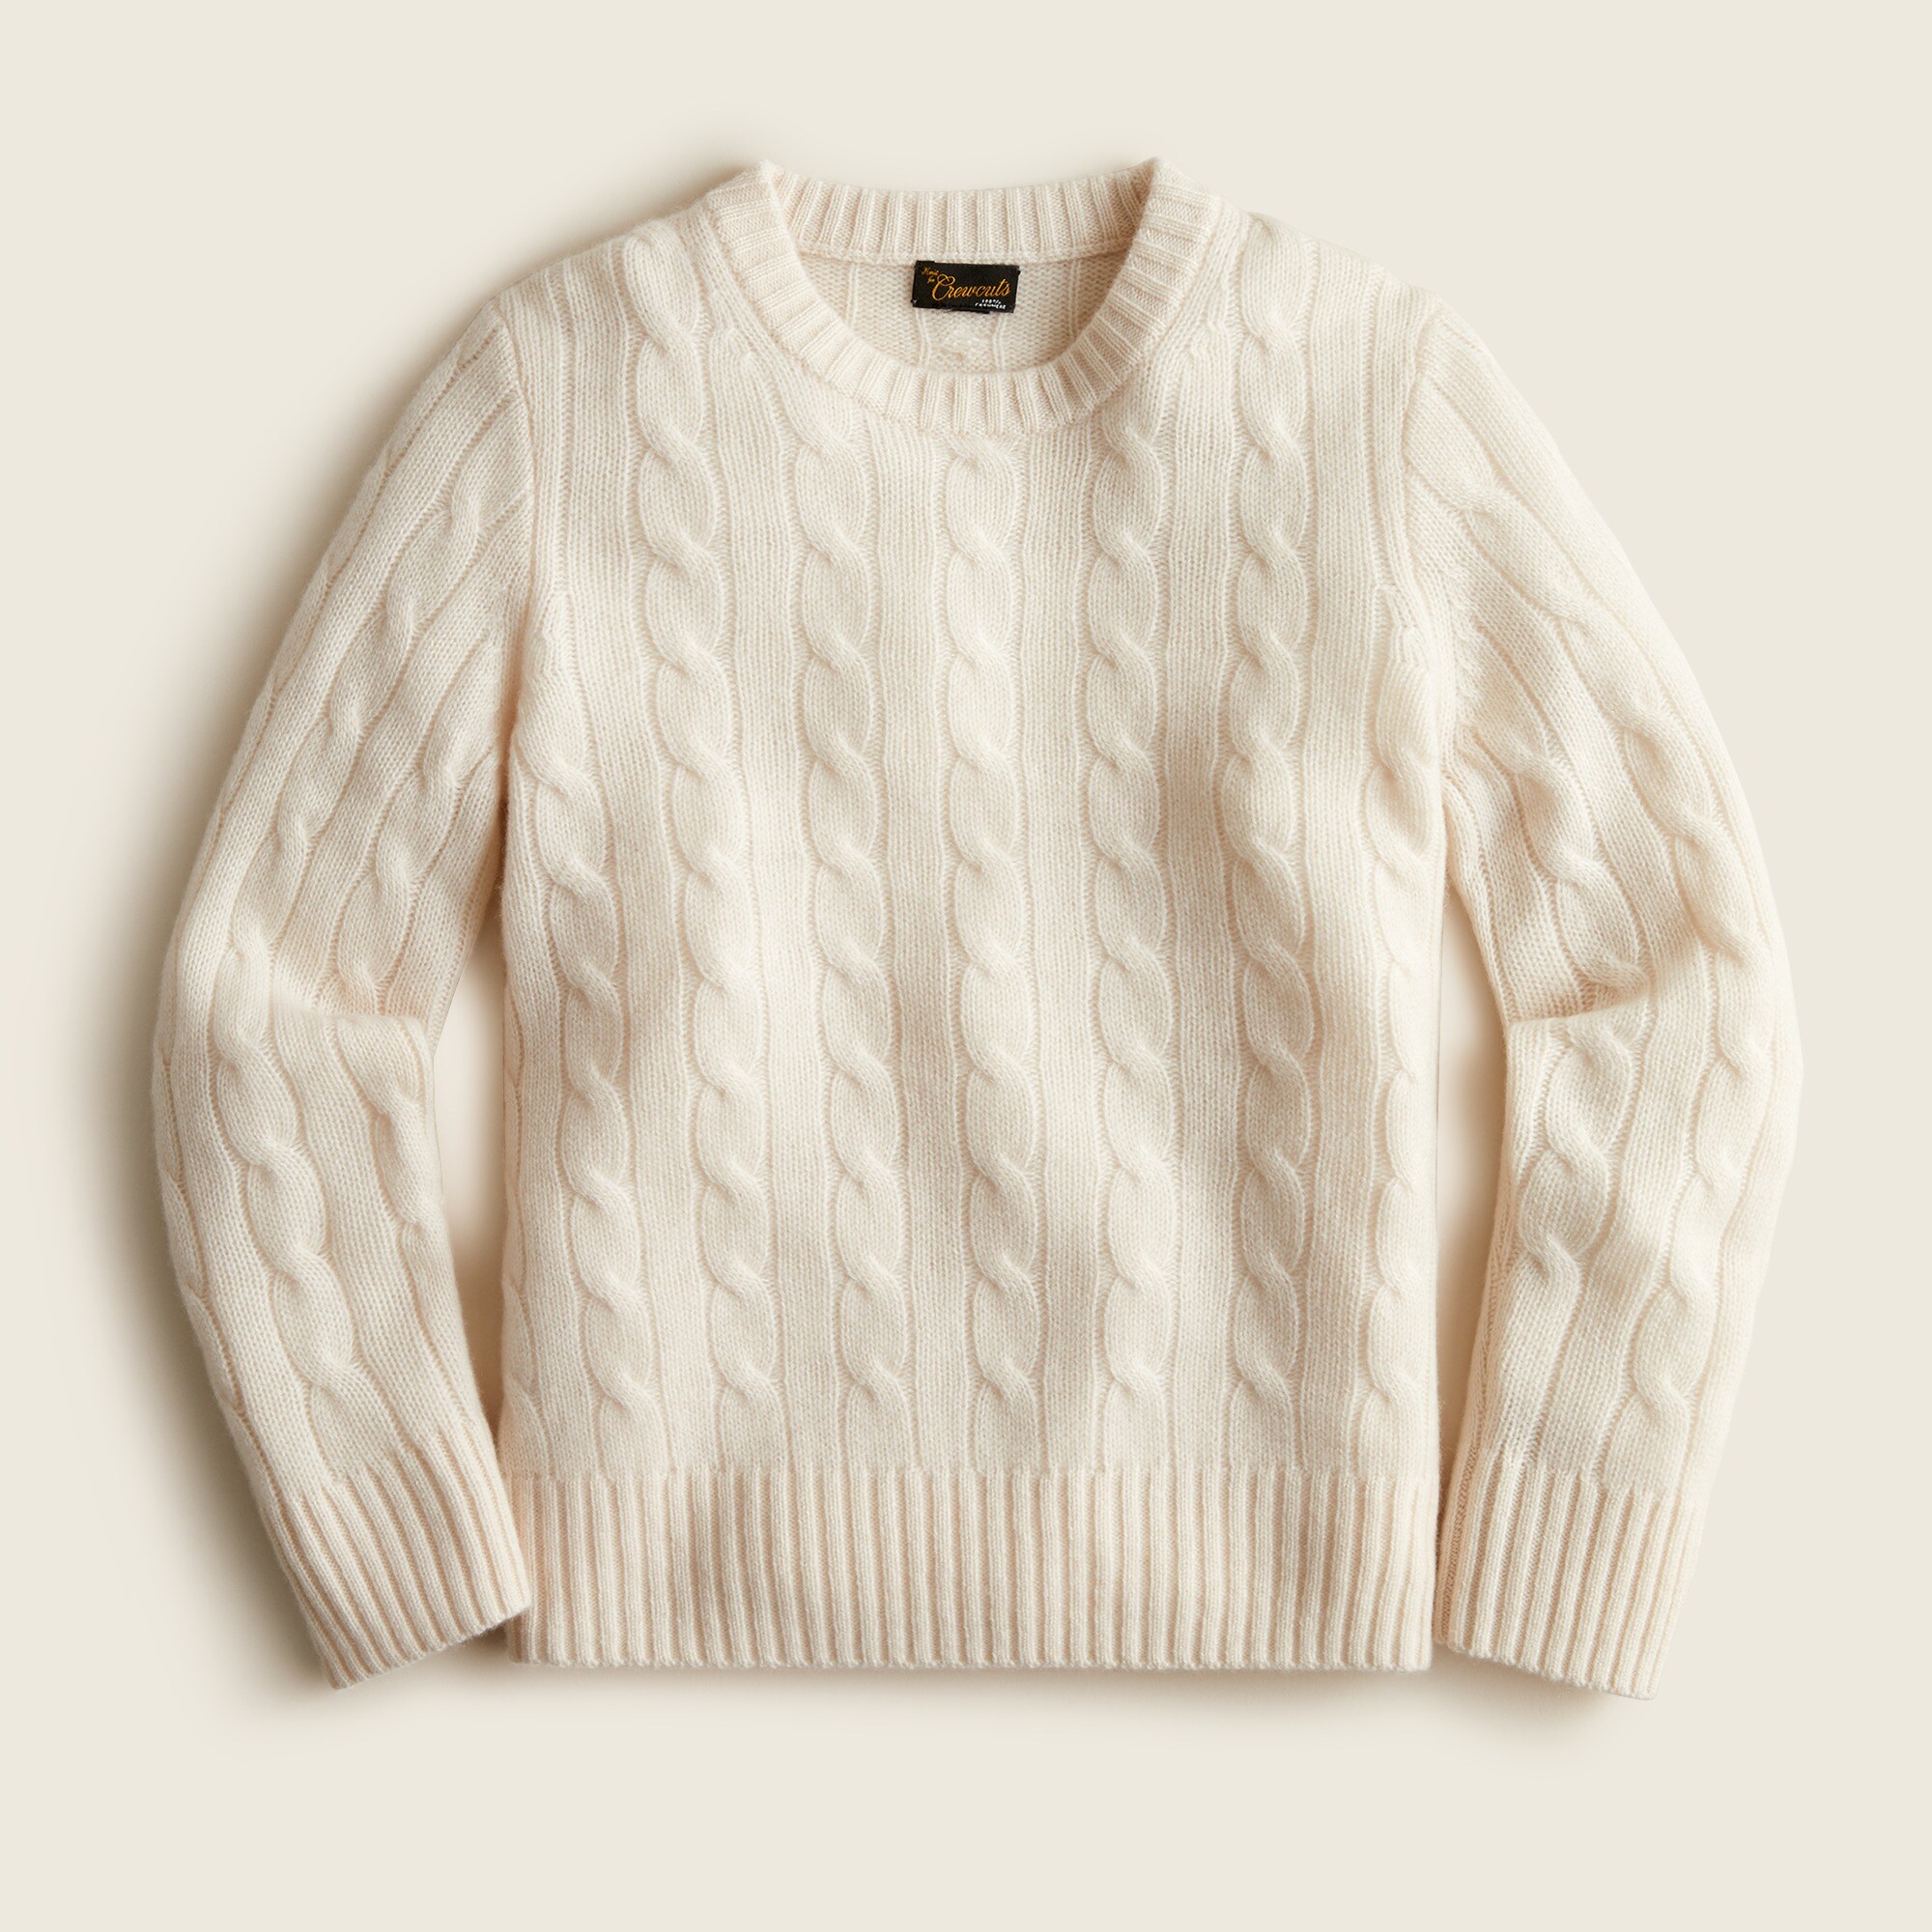 제이크루 보이즈 스웨터 J.crew Boys cable-knit cashmere crewneck sweater,HTHR MUSLIN